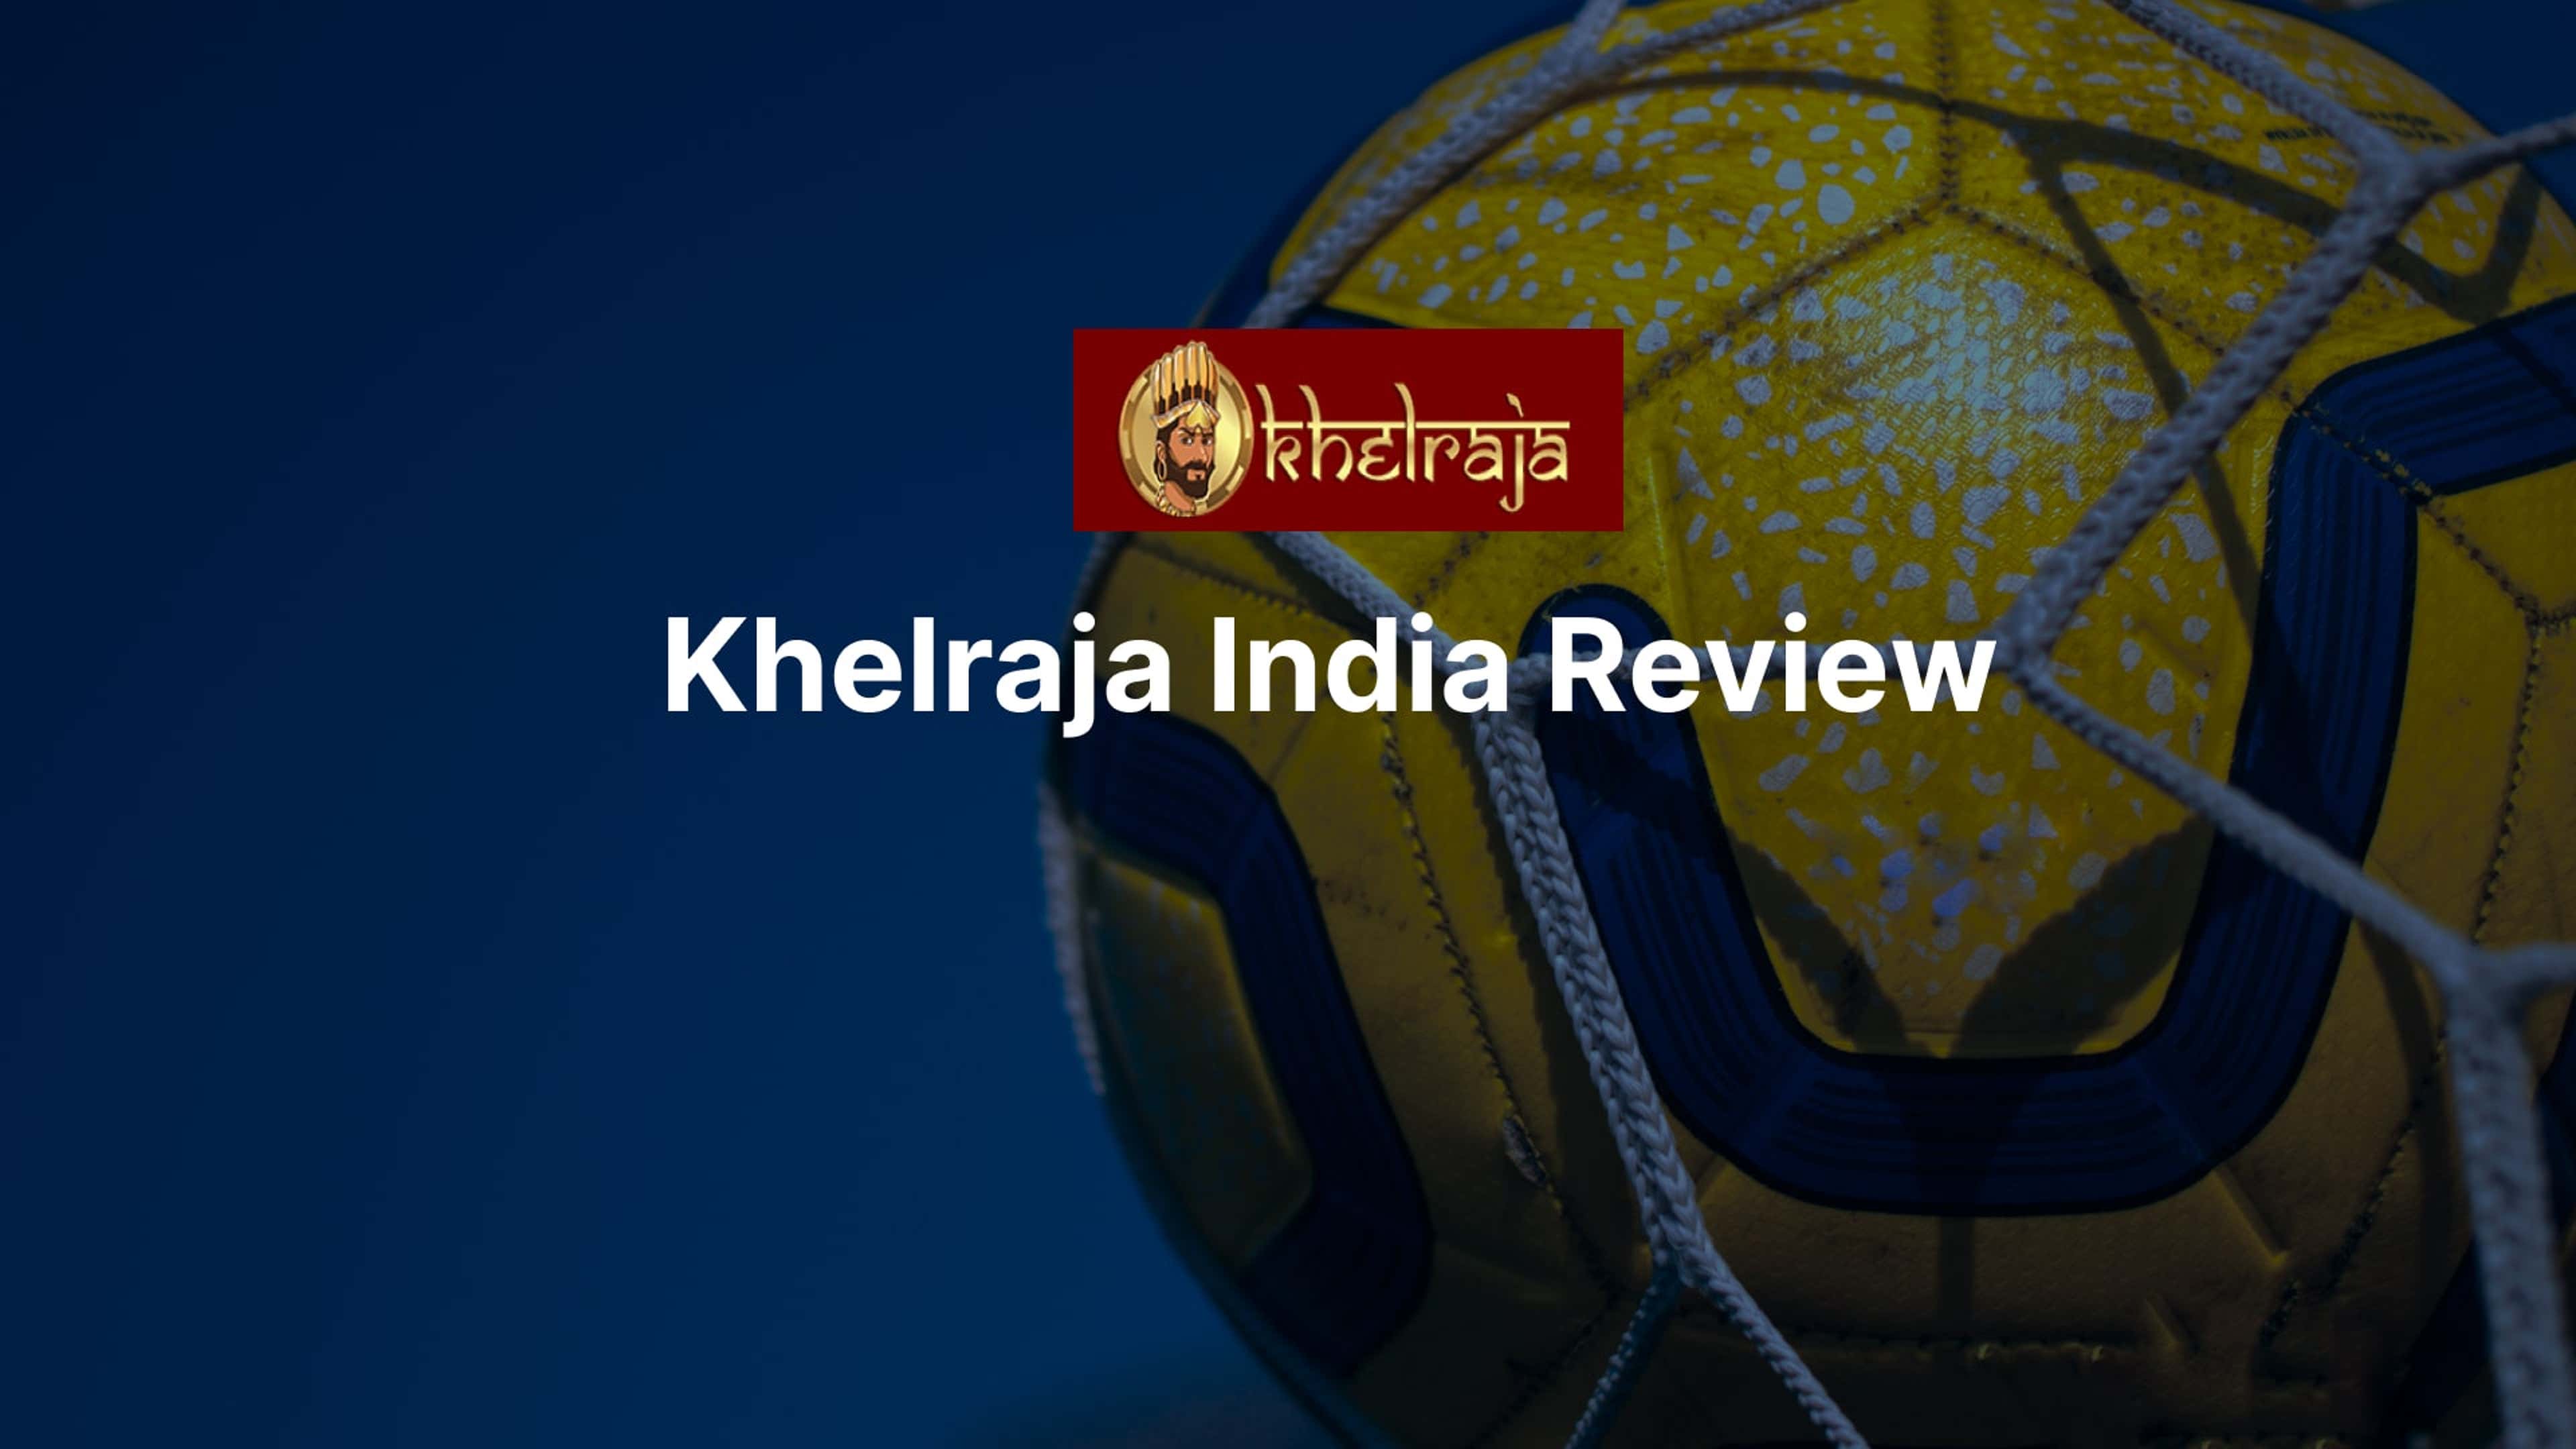 Khelraja review